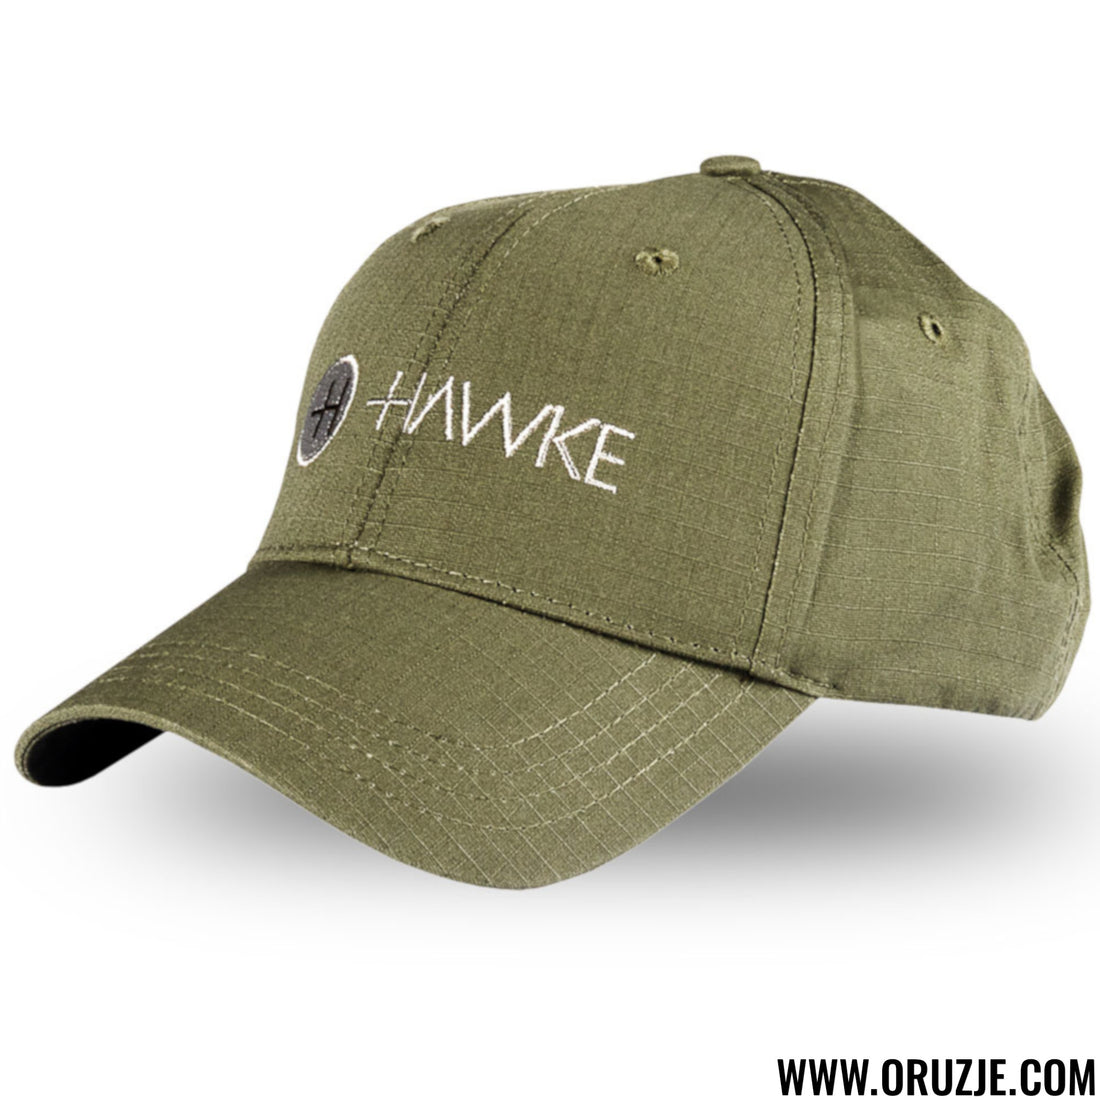 Hawke Black Grey Distressed-g13